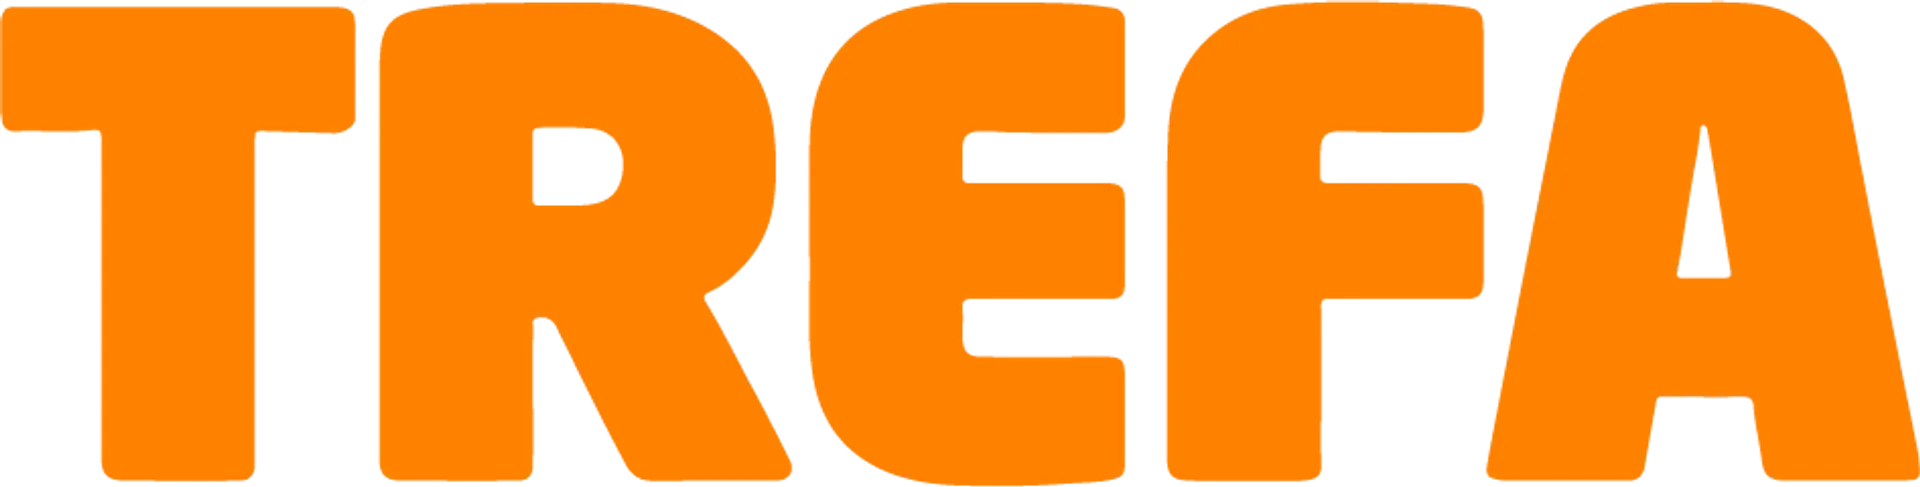 TREFA COOP logo